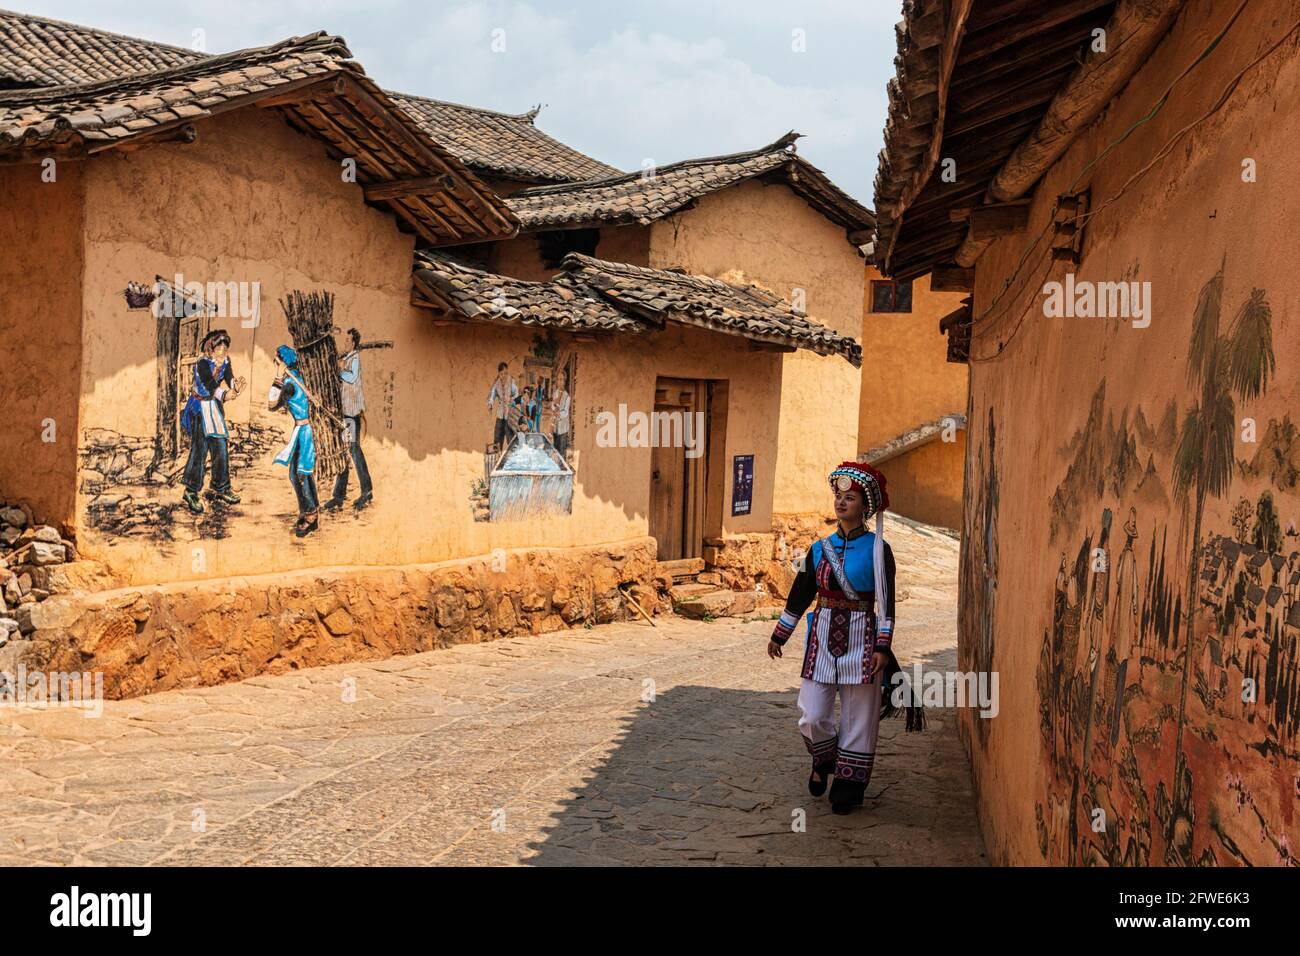 March 25, 2021 - Mile, China: Frau mit traditioneller Keyi-Minderheitskleidung, die in einem abgelegenen Dorf unterwegs ist Stockfoto